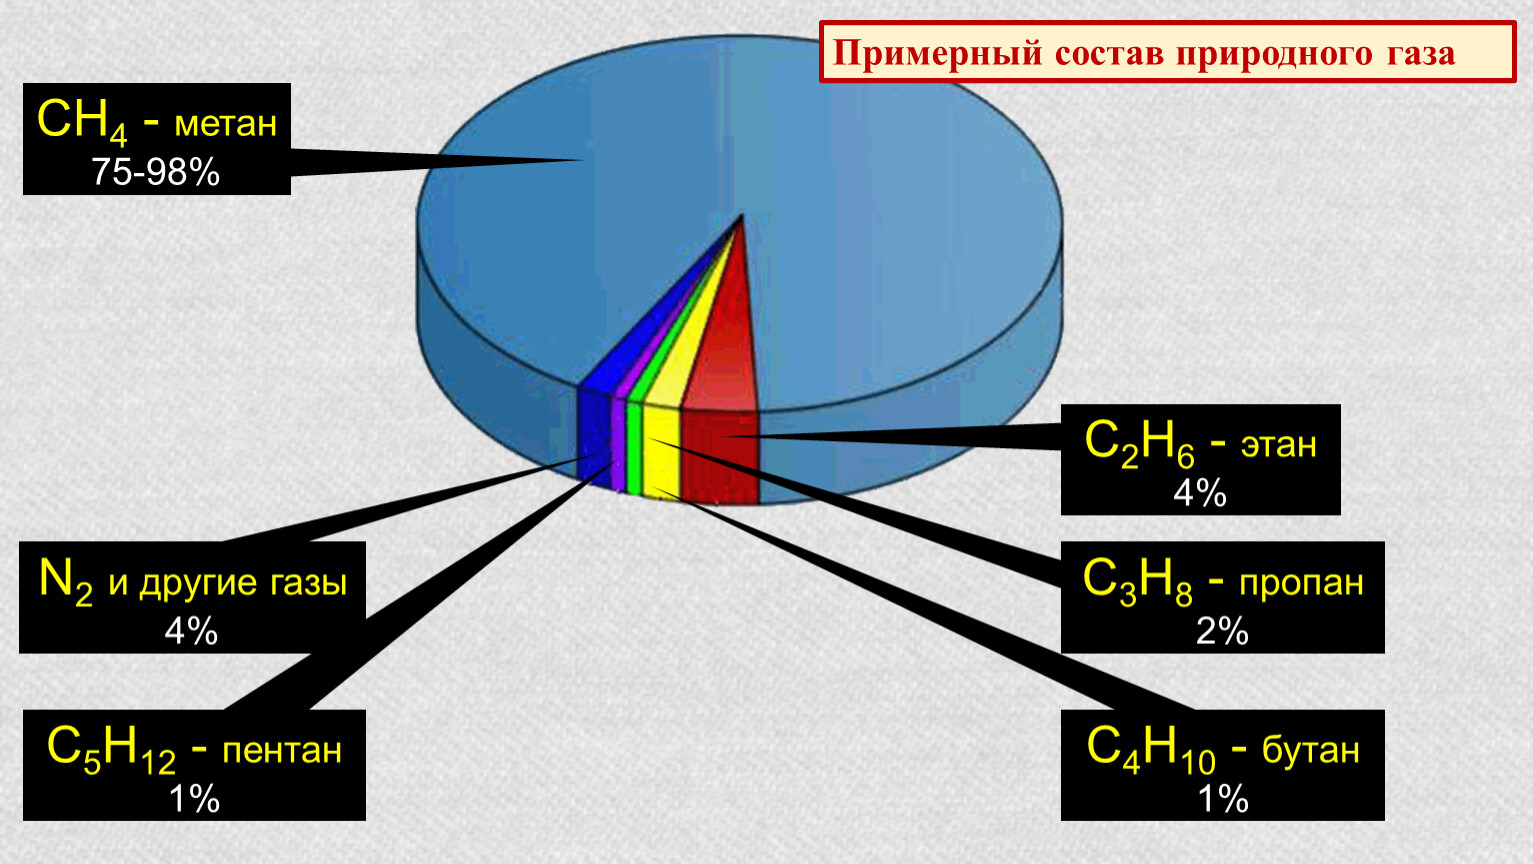 Чем является метан. Природный ГАЗ хим состав. Химический состав природного газа диаграмма. Примерный химический состав природного газа. Состав метана газа природный ГАЗ.